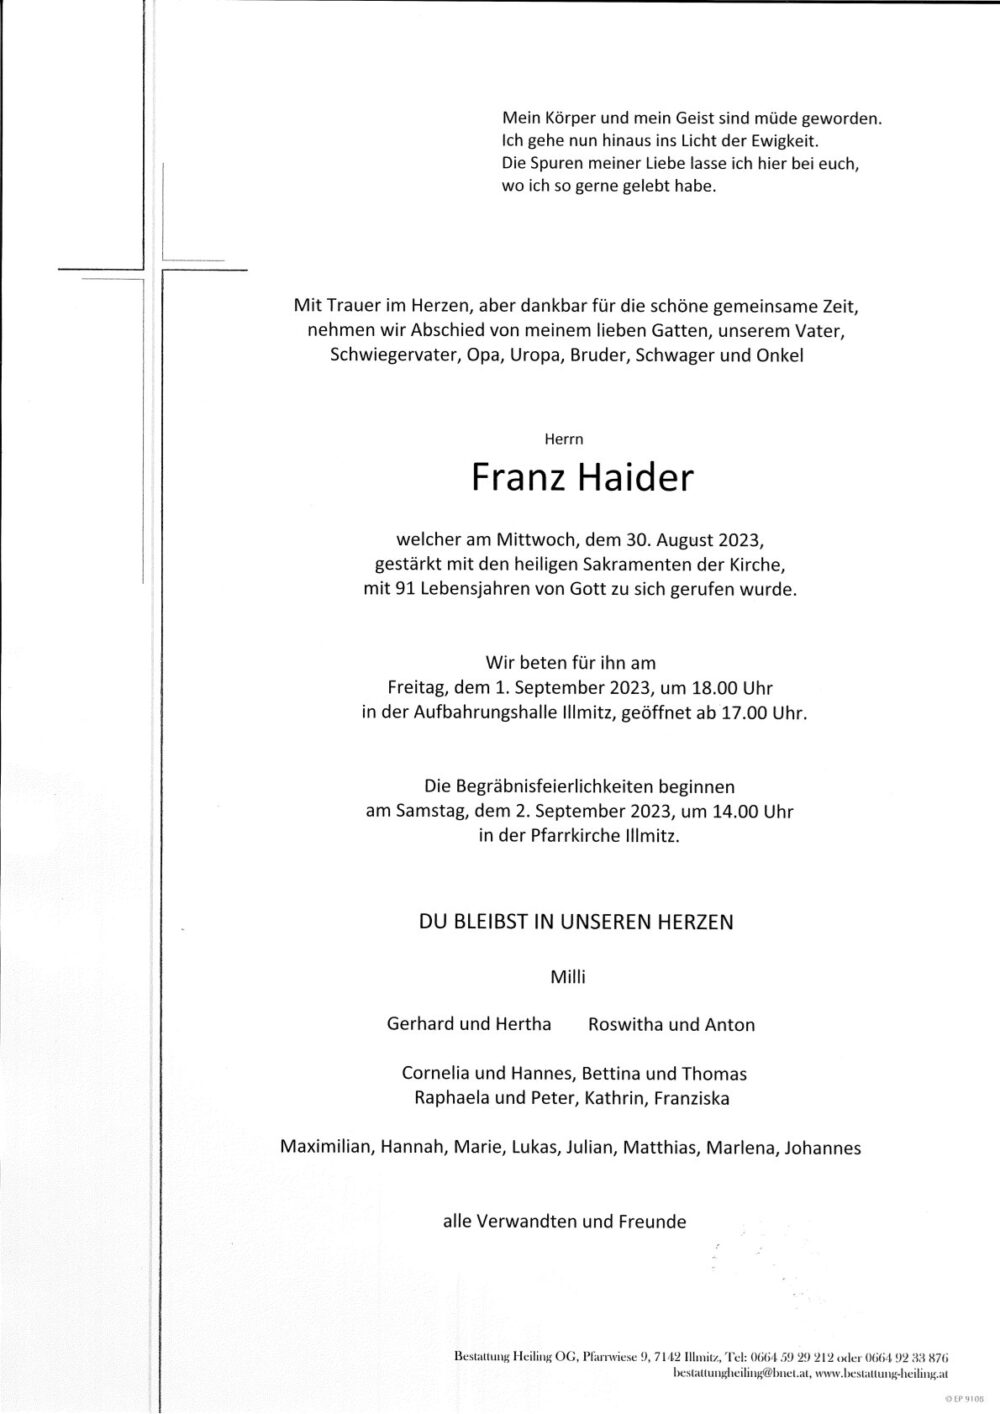 Franz Haider - Bestattung Heiling